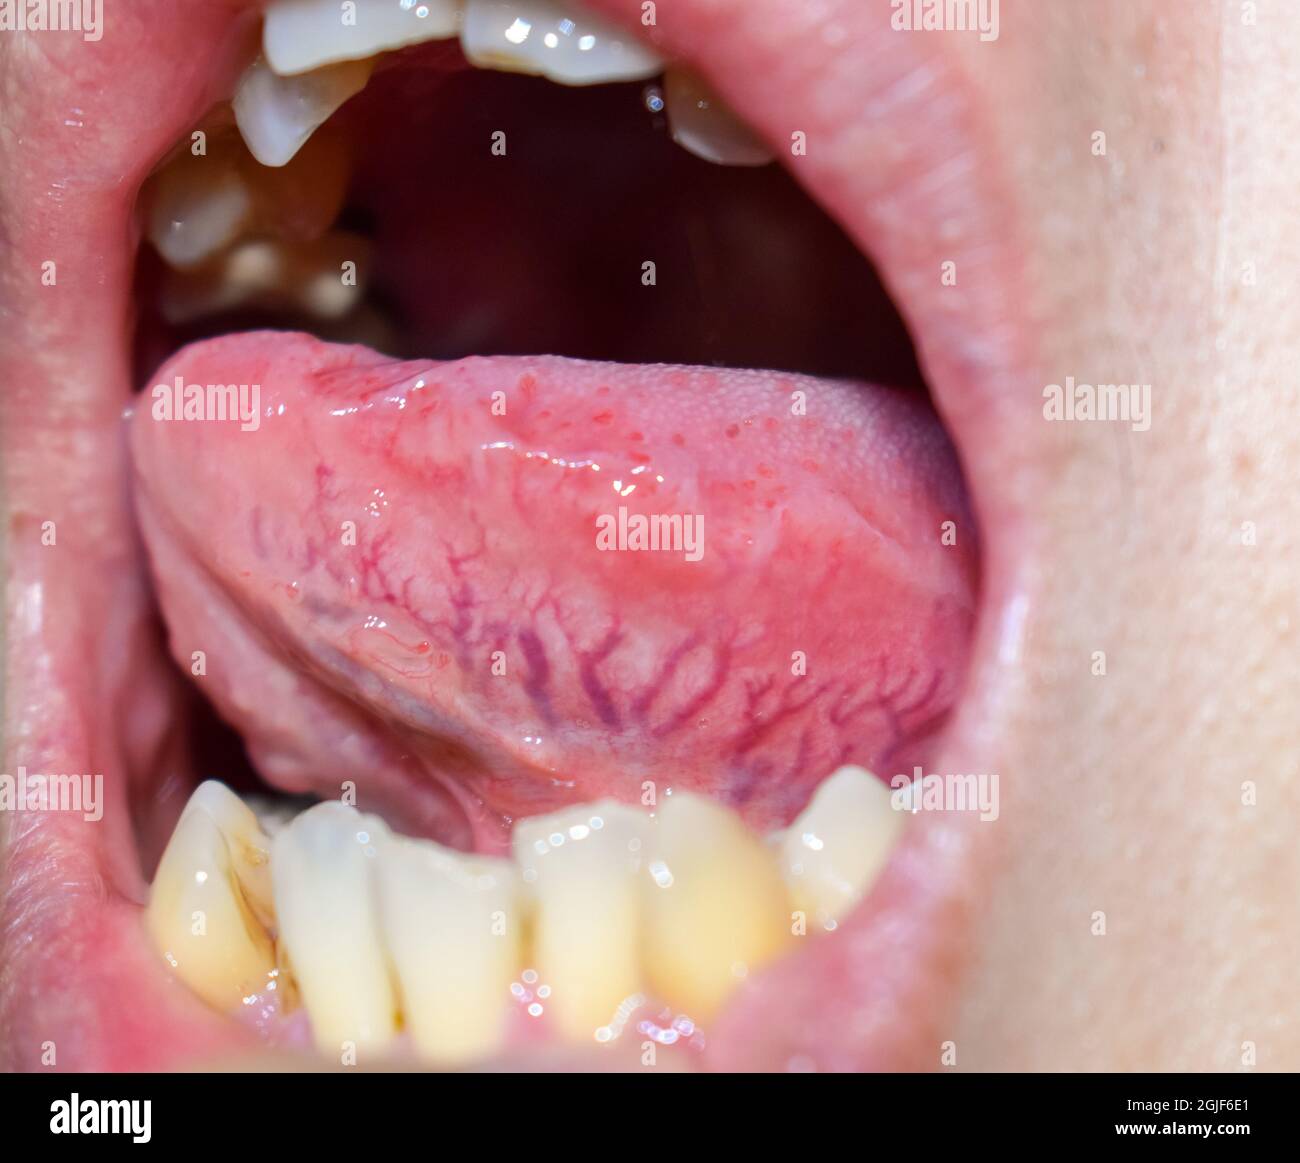 Venas prominentes, dilatadas y tortuosas llamadas varices en el lado lateral de la lengua. Vista de primer plano. Foto de stock